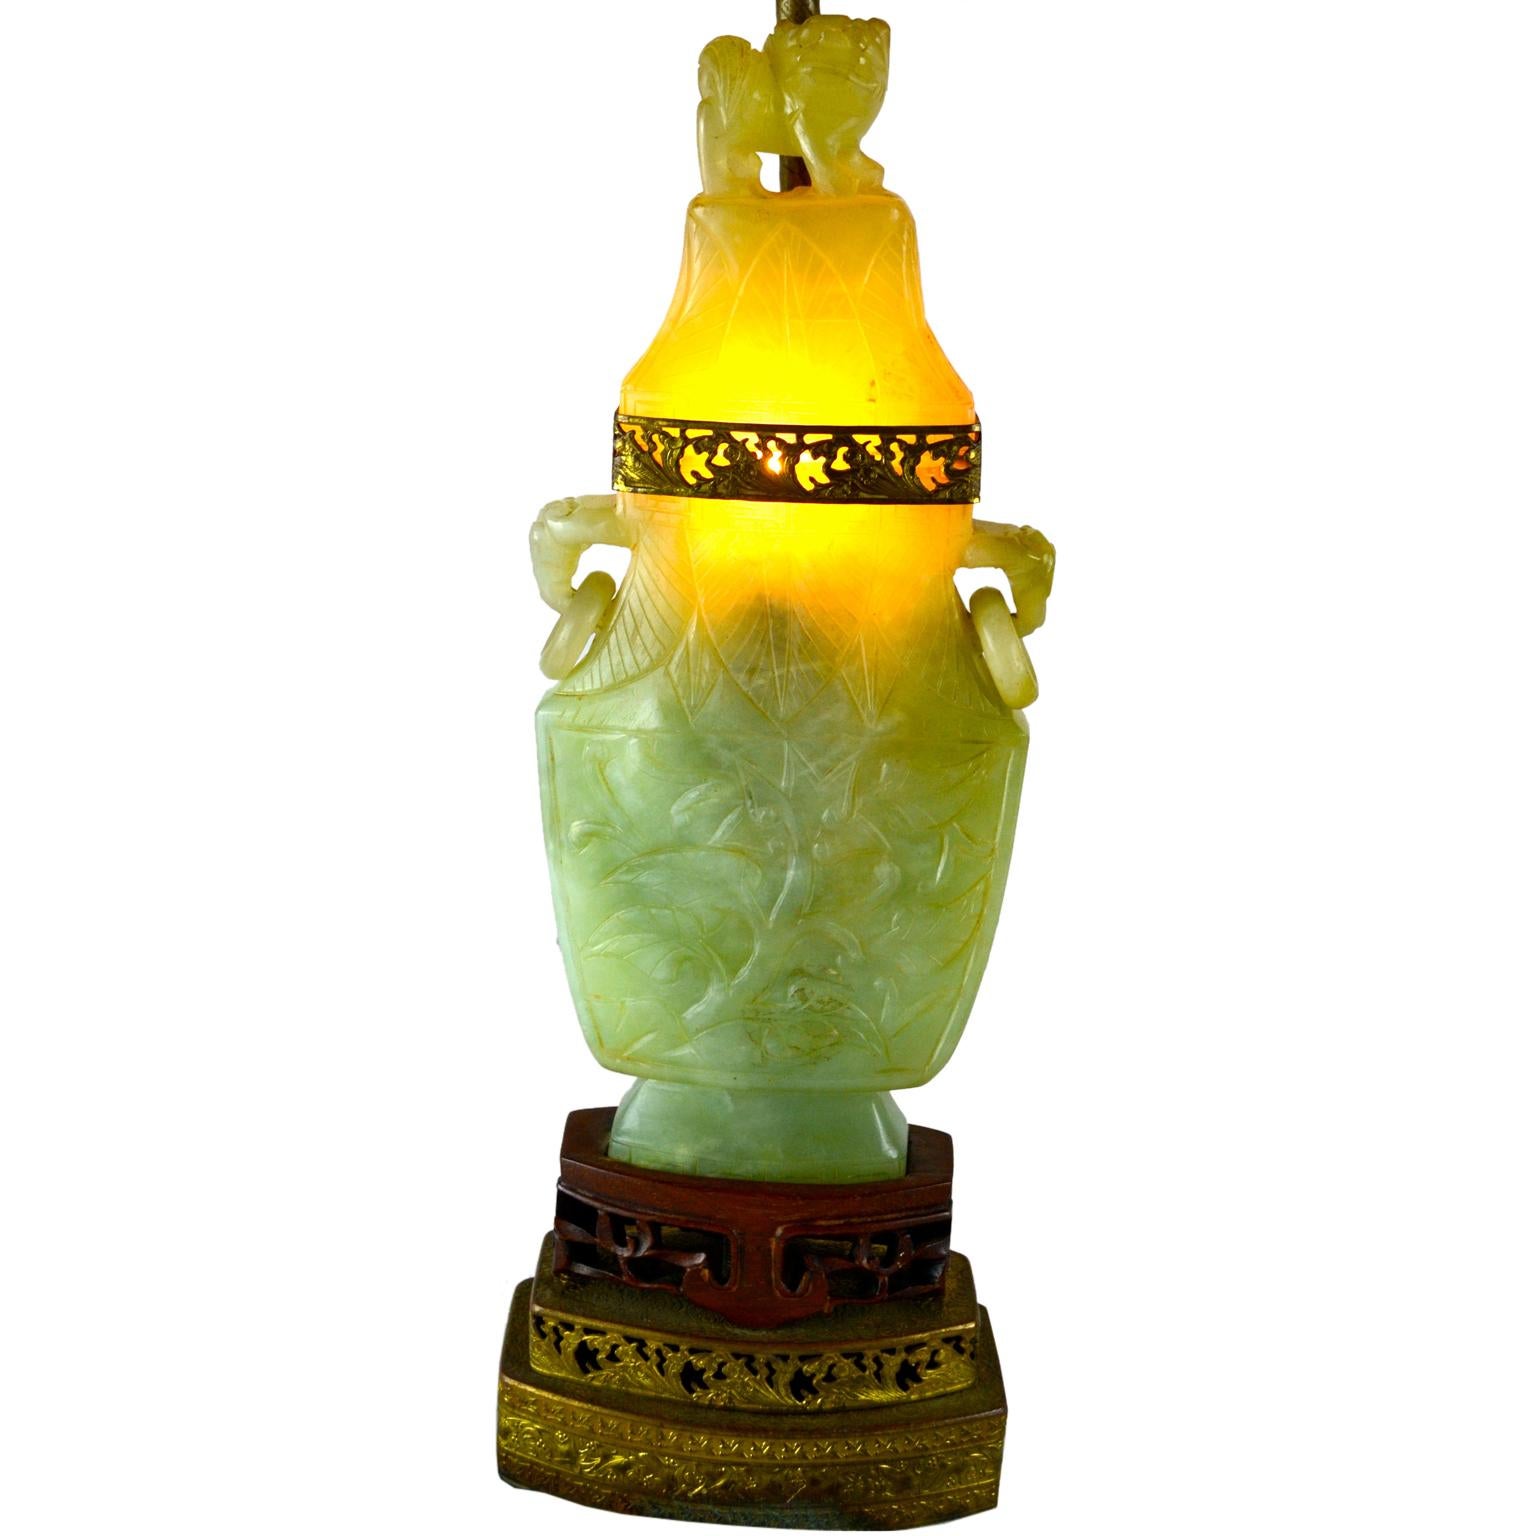 Les corps en pierre de ce type de lampe d'intérieur sont souvent appelés quartz, jadéite ou même jade mais sont en fait de la famille de la fluorine, une pierre plus tendre et plus facilement sculptable. Les corps creux de l'urne, dotés d'une